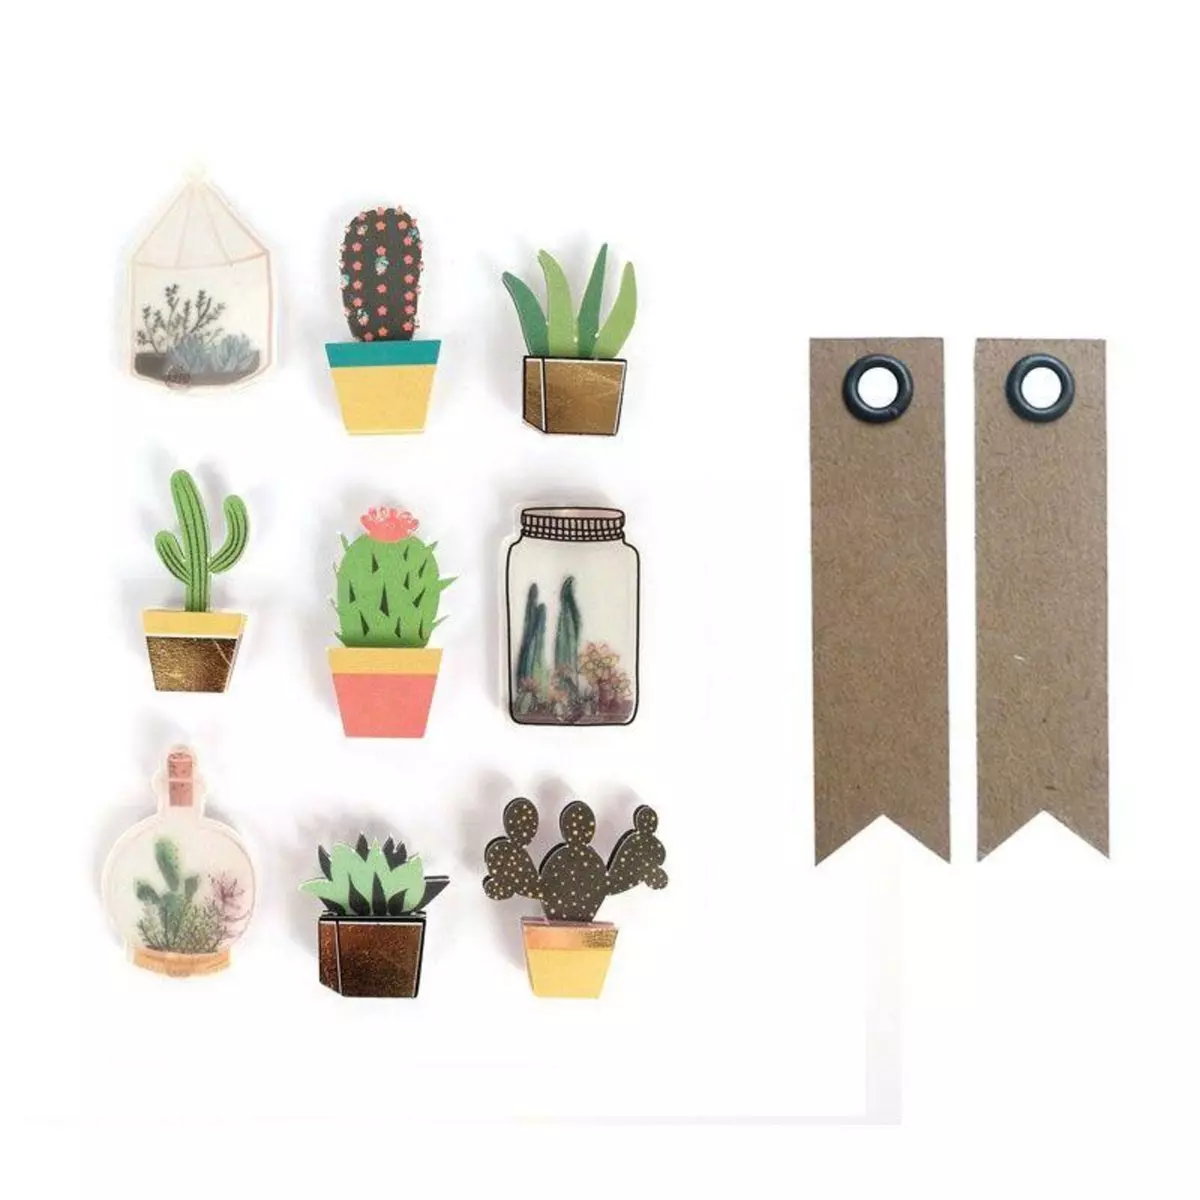 Graine créative 9 stickers 3D cactus et botanique 4 cm + 20 étiquettes kraft Fanion